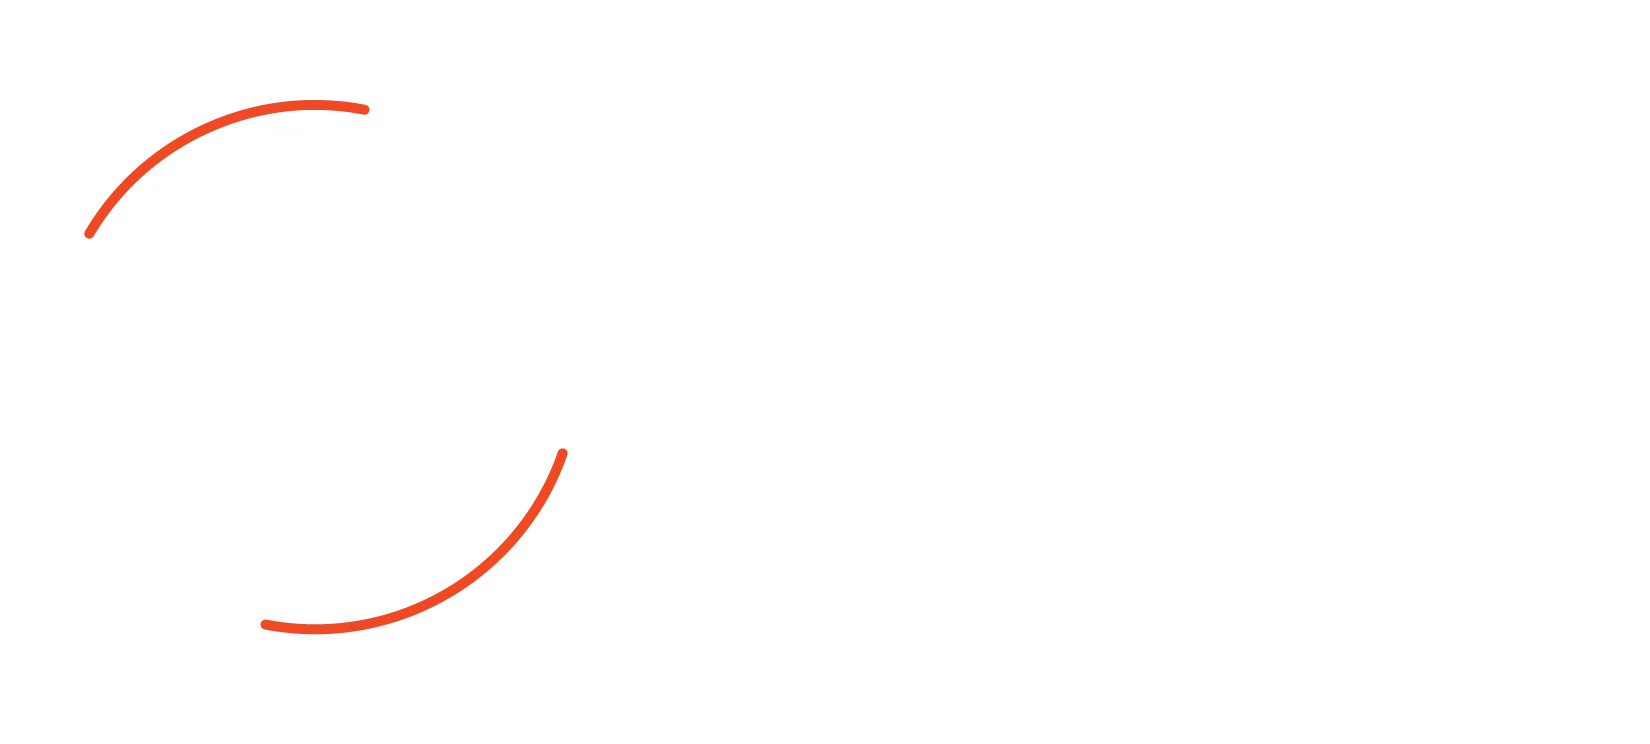 Spyglass Realty